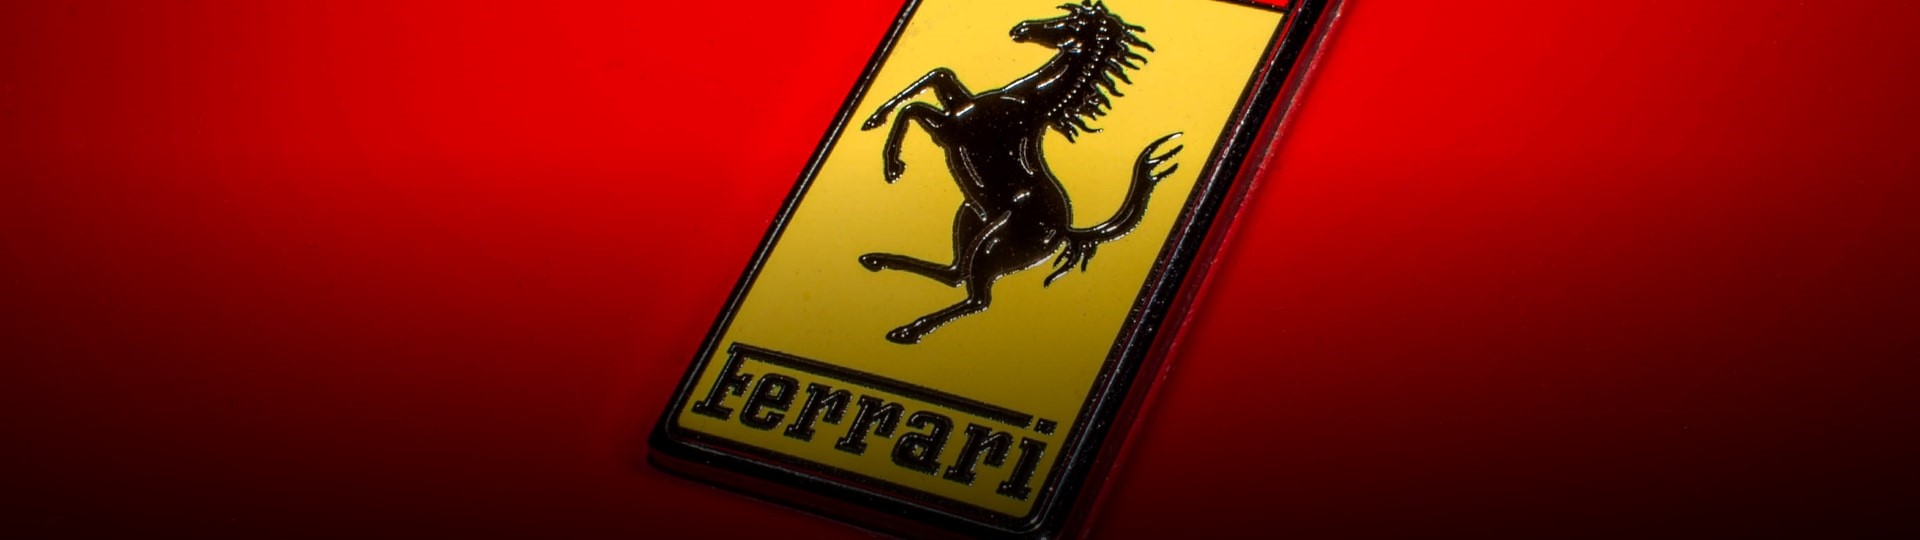 Ředitel Ferrari z osobních důvodů skončil